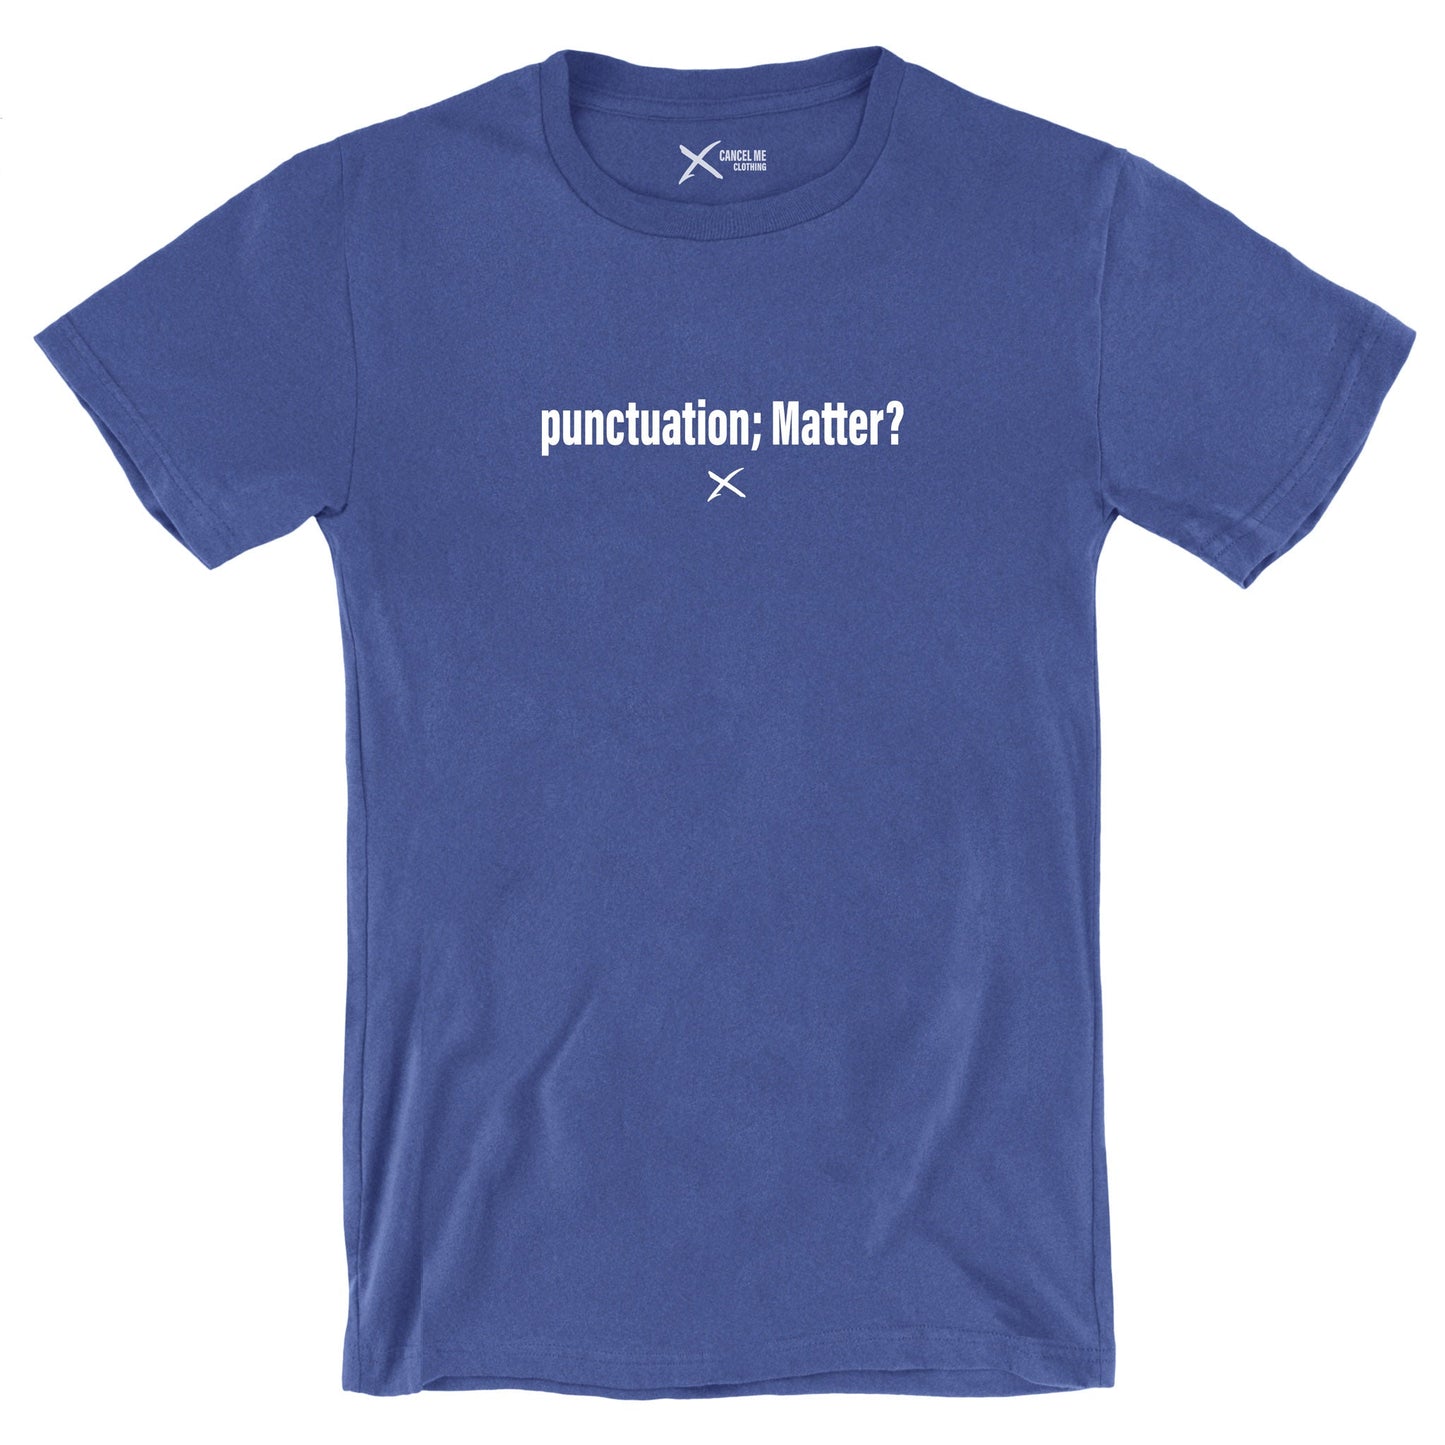 punctuation; Matter? - Shirt